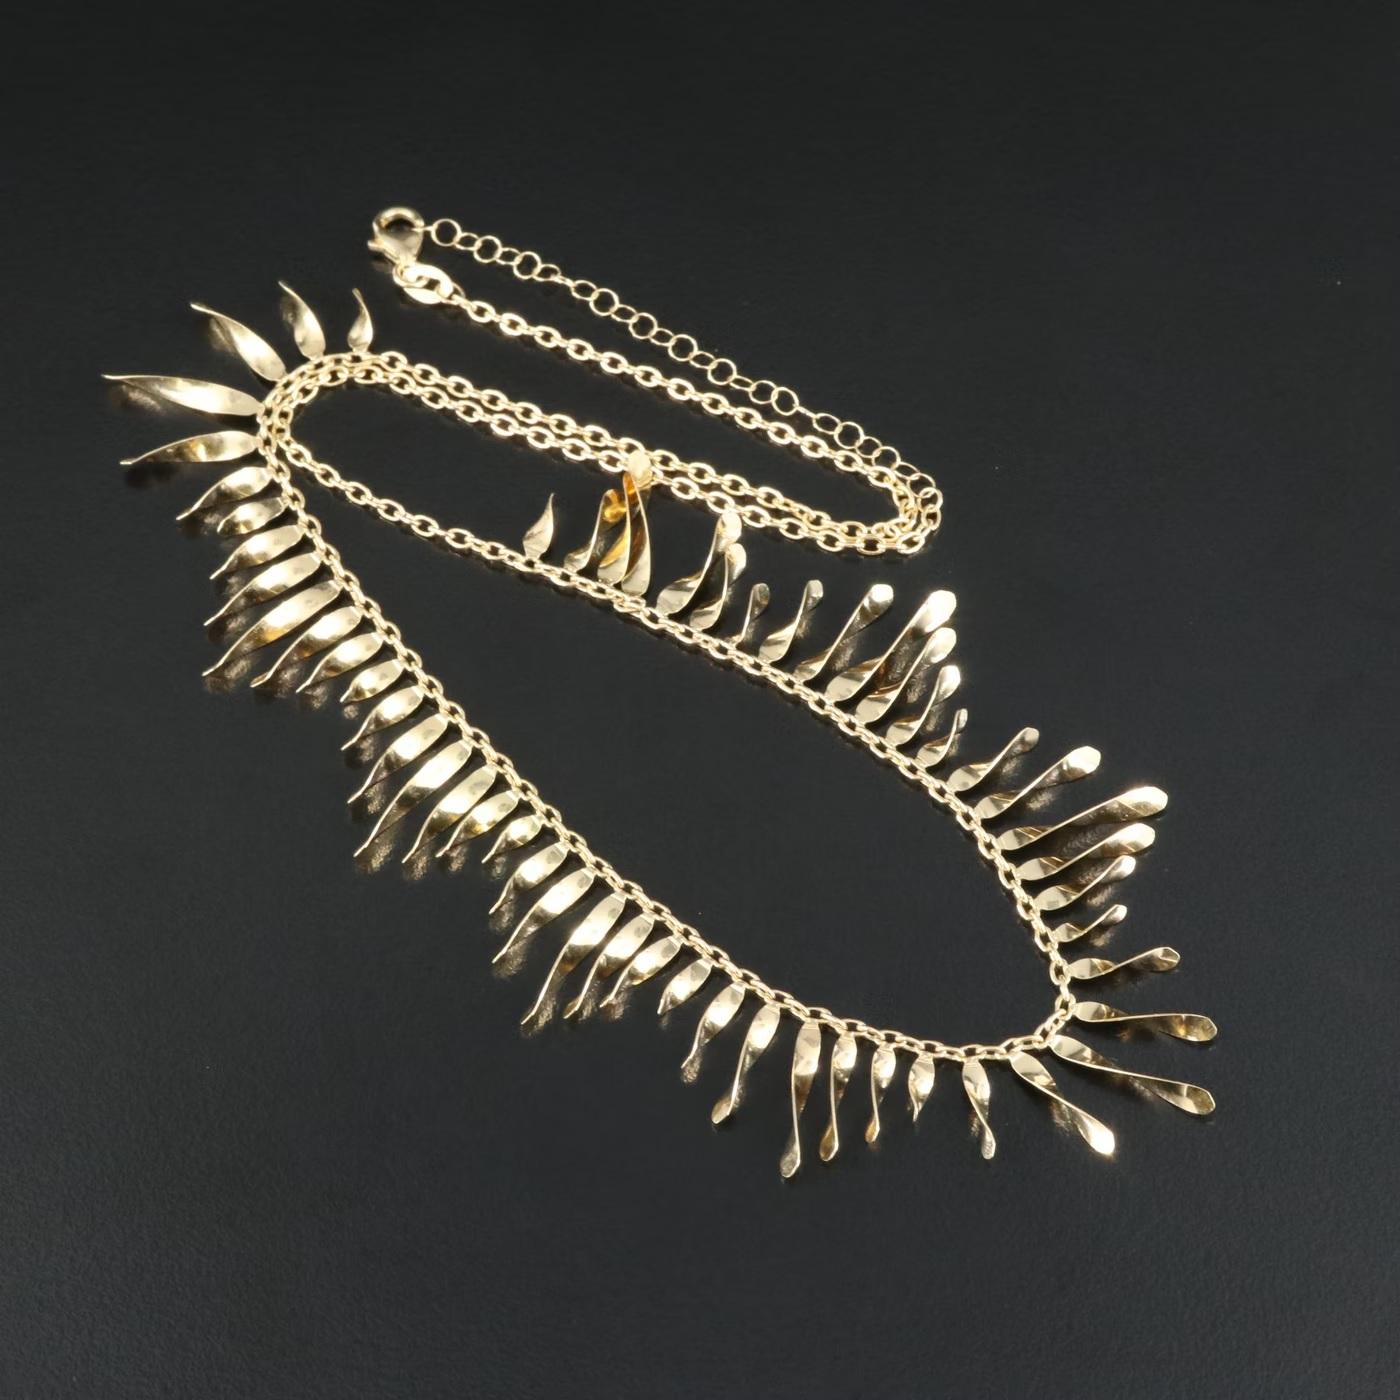 $2950 / Italy Designer Top Quality Fringe Necklace / Adjustable / 14K Gold 3